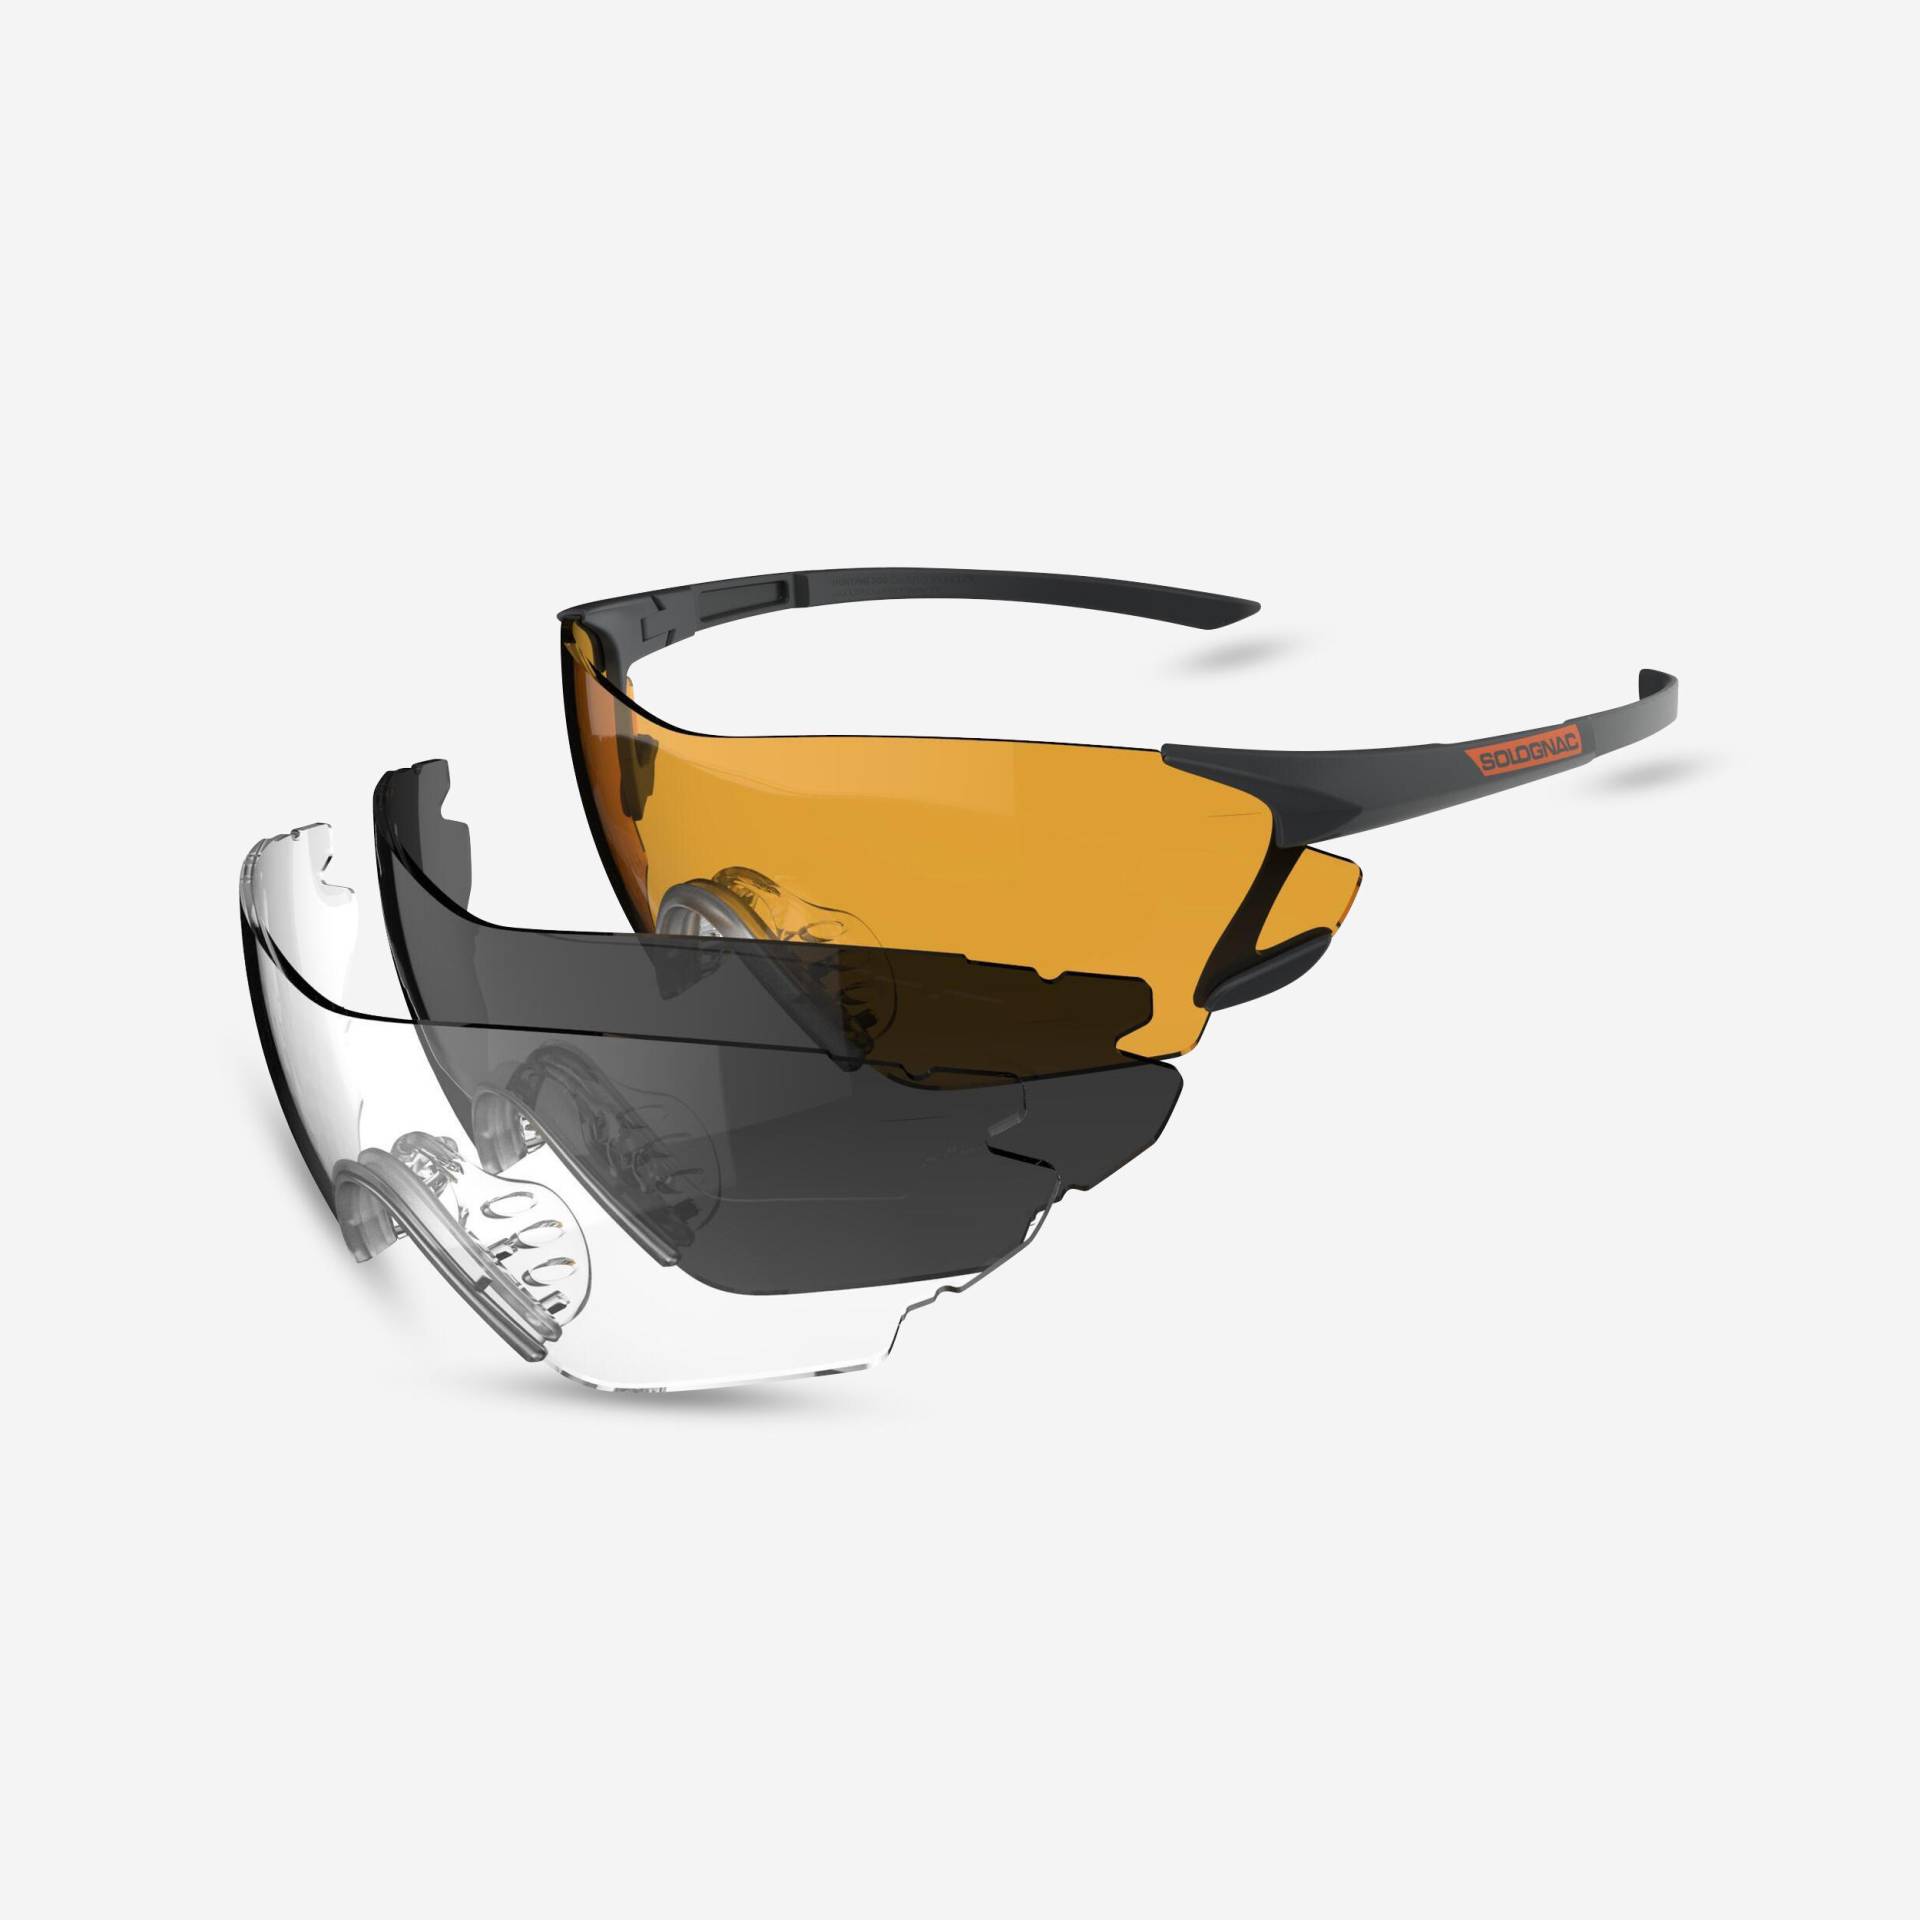 Schiessbrille TRAP CLAY 100 PK3 3 Wechselgläser von SOLOGNAC